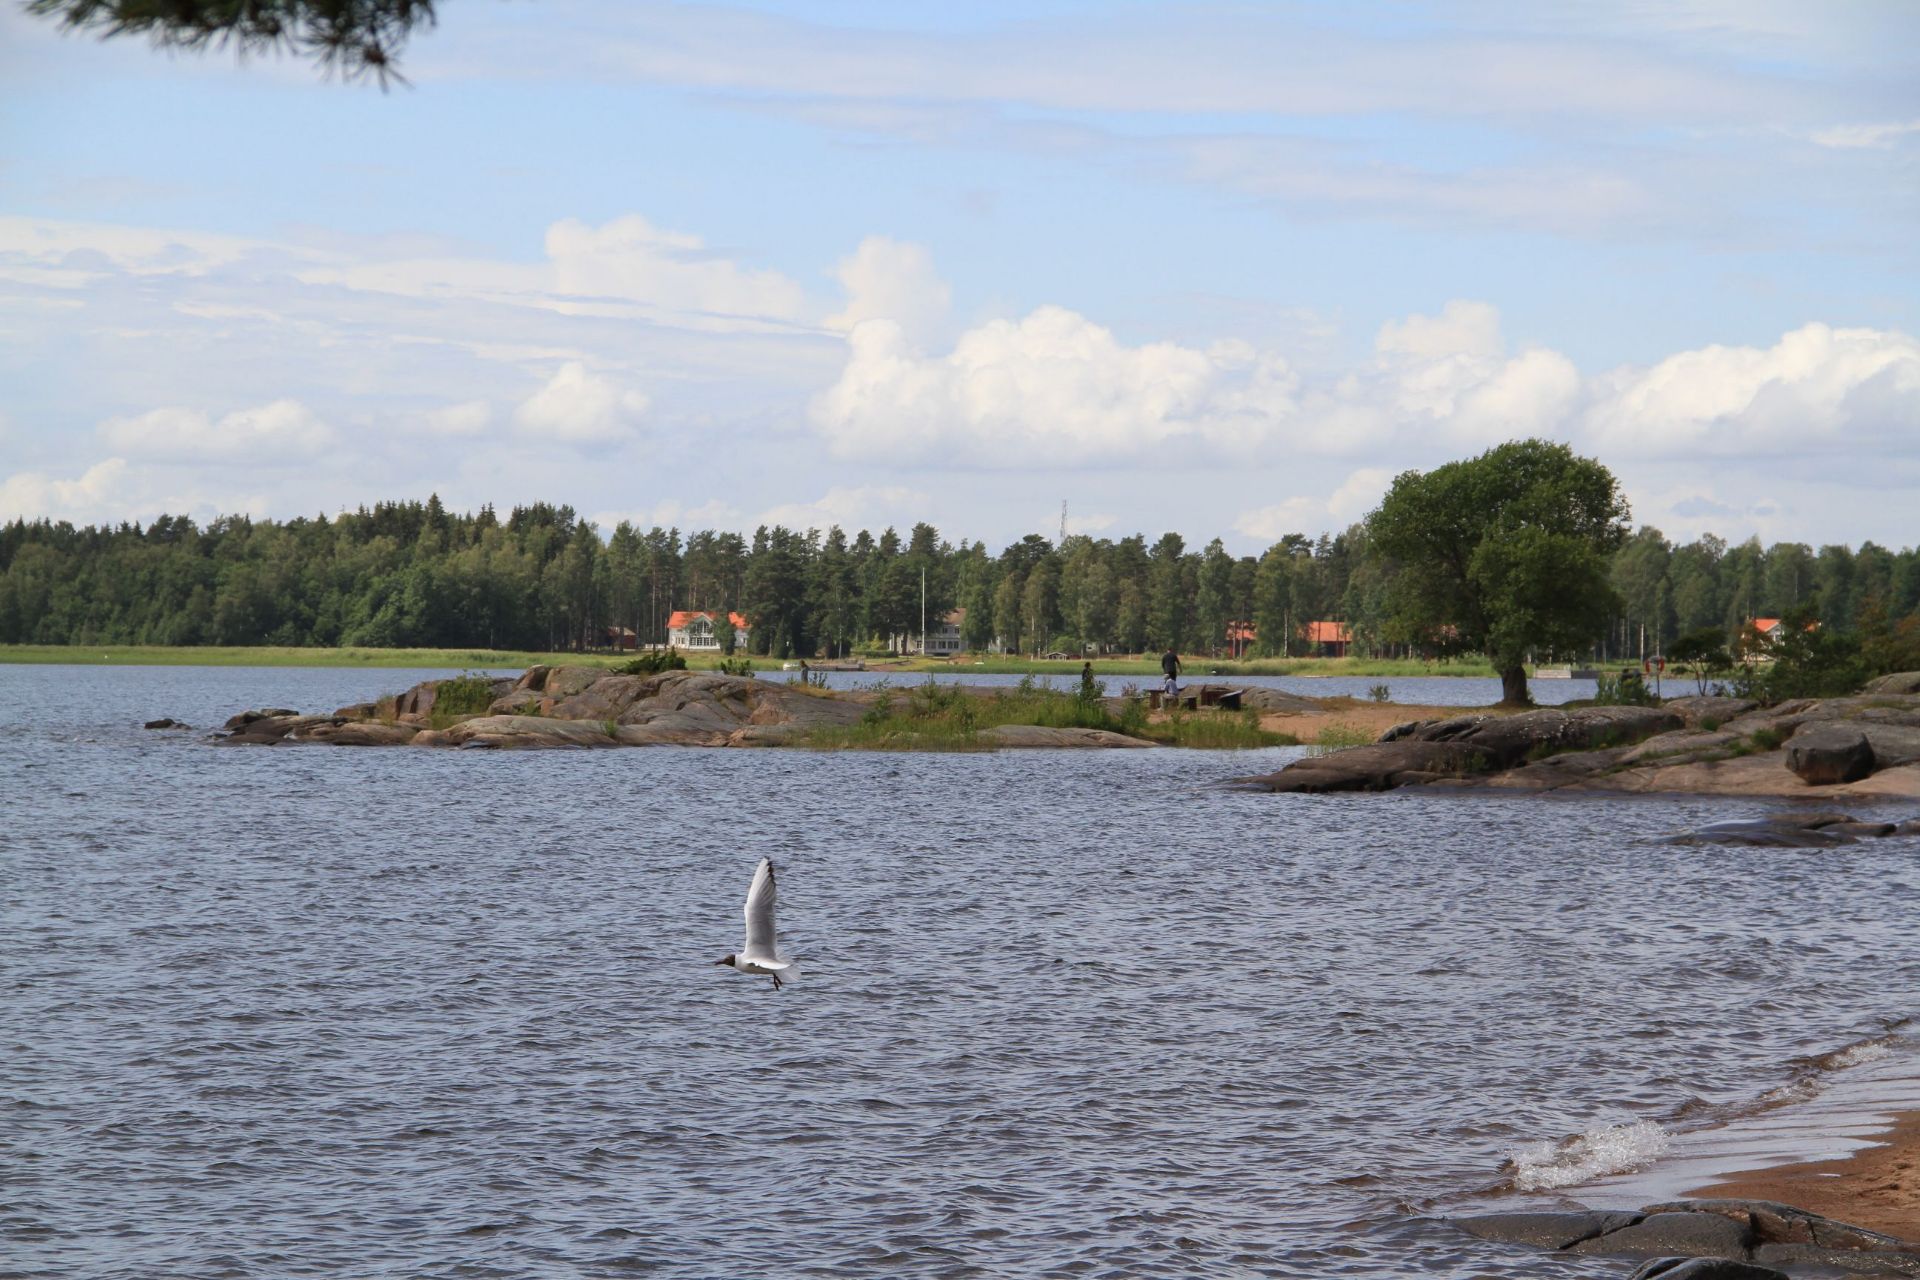 维纳恩湖，北欧最大的淡水湖。虽是七月但湖水还是冰冷，但北欧人就已下湖游泳。北欧人喜欢户外运动，湖中有